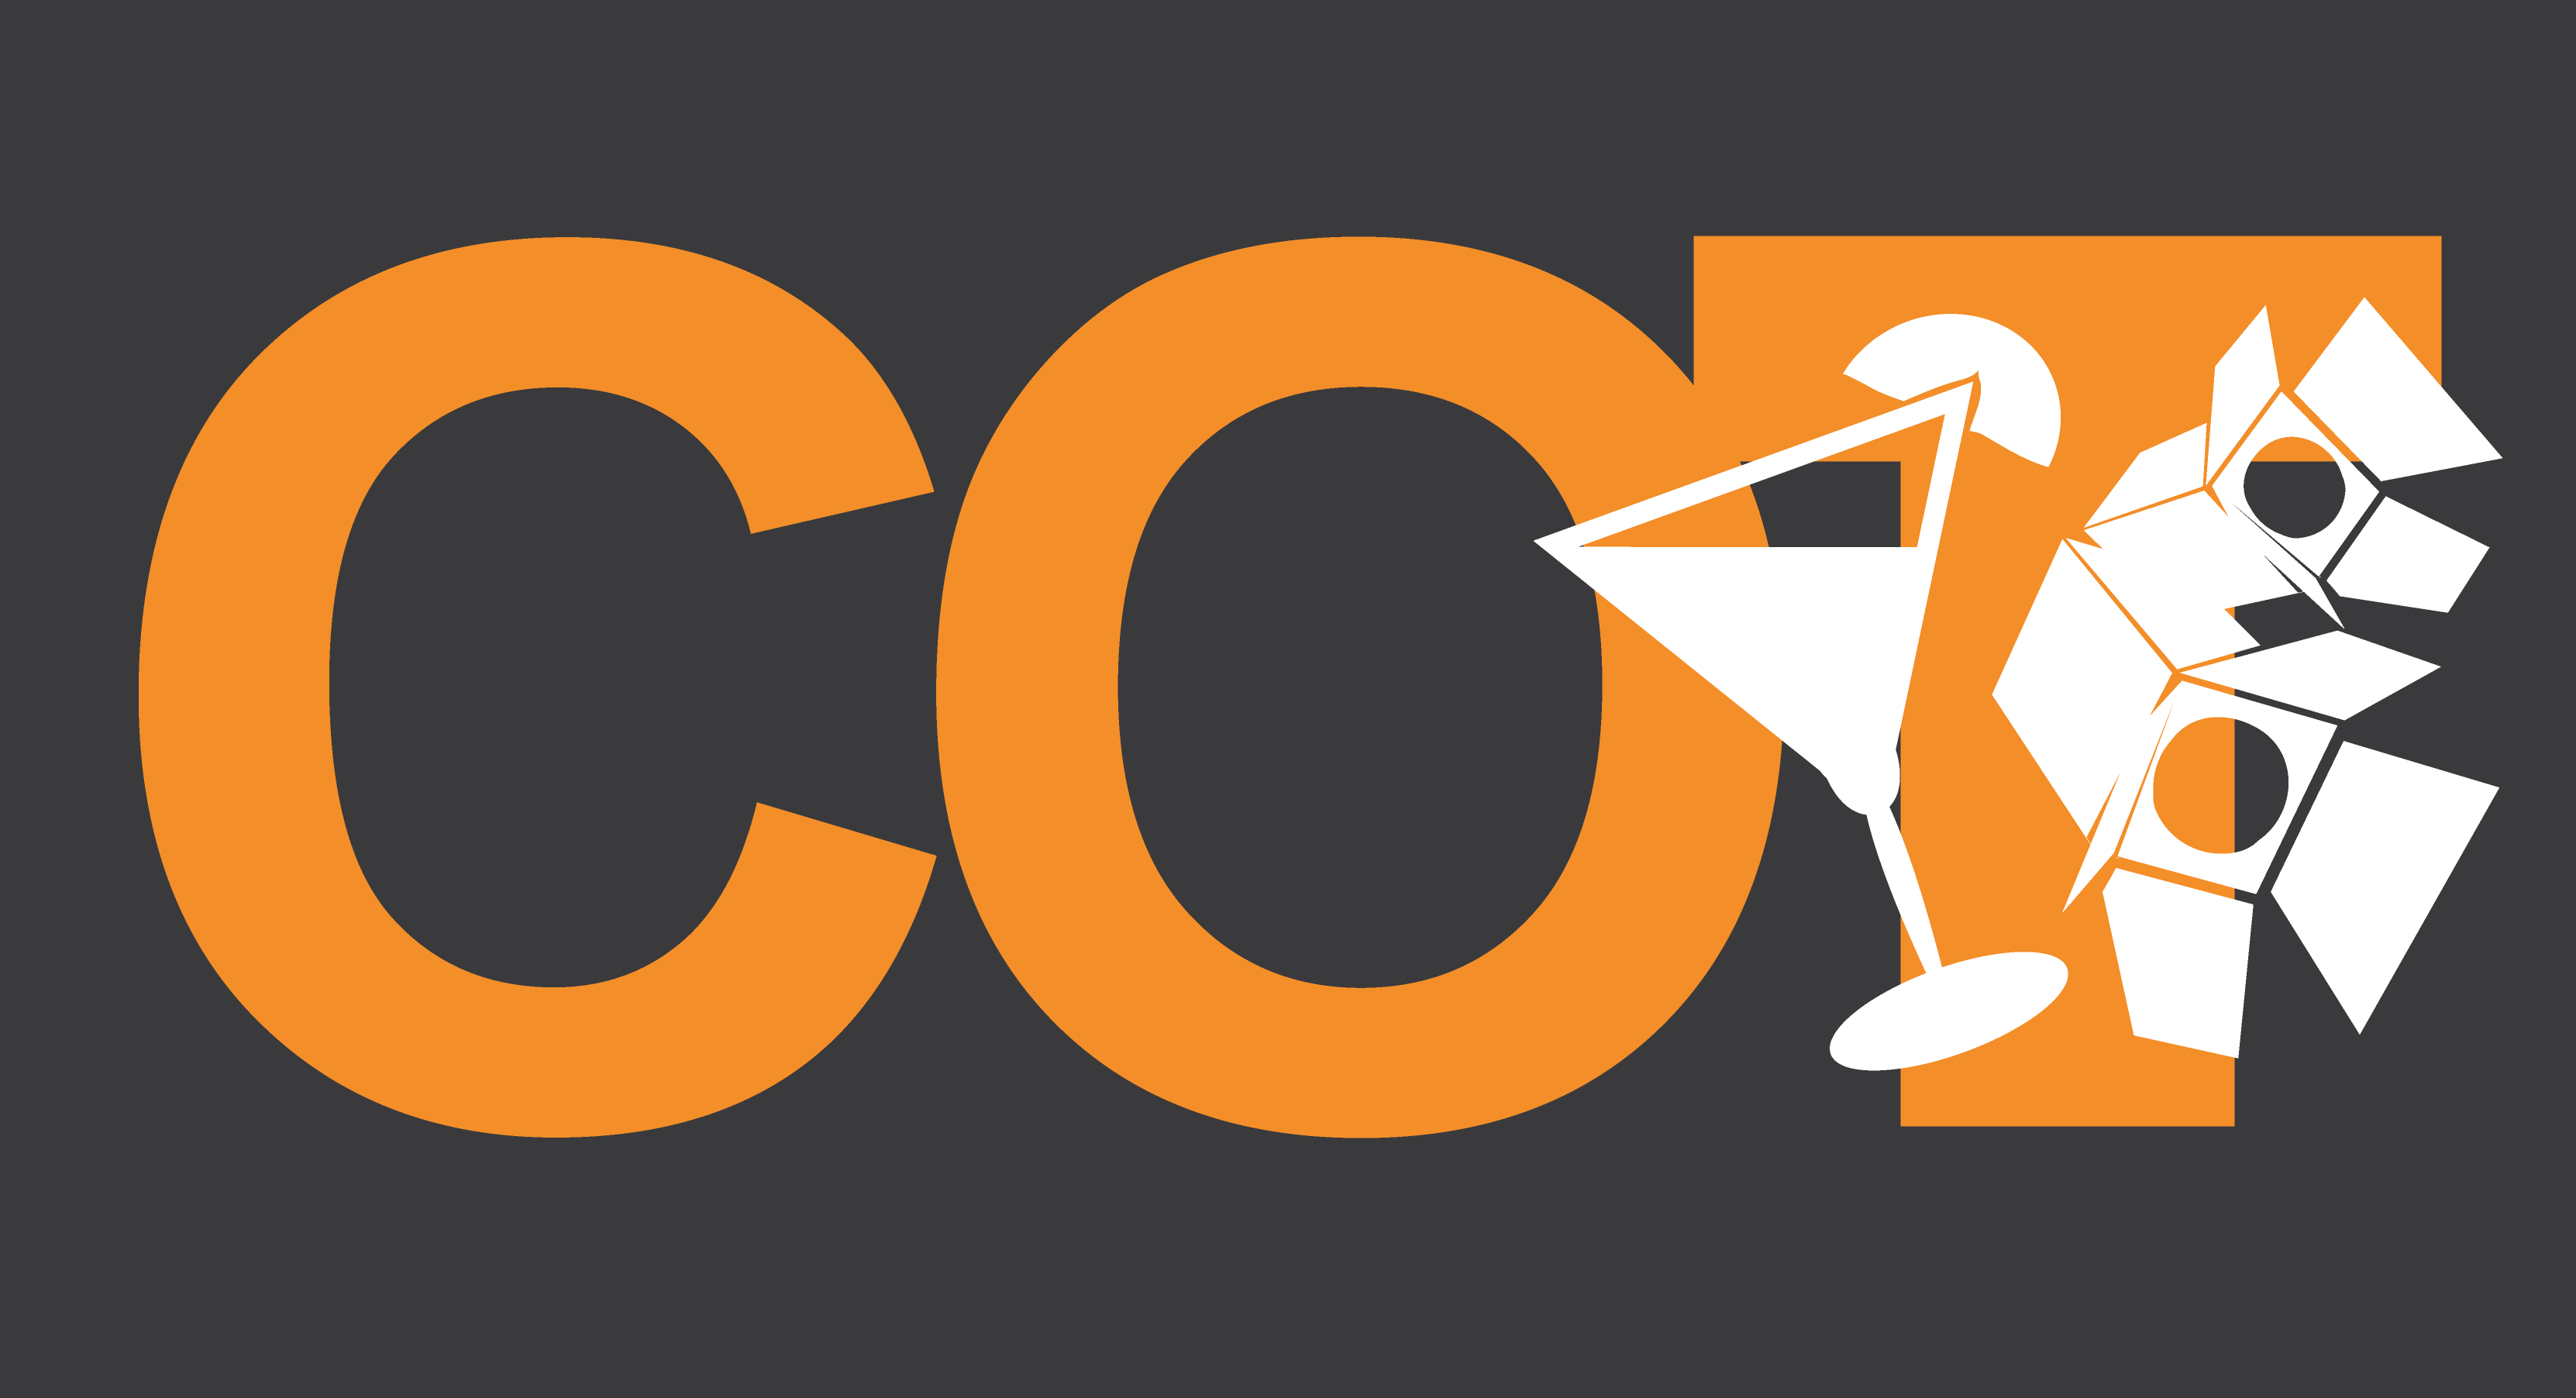 Cot Logo - COT LOGO Big Letters